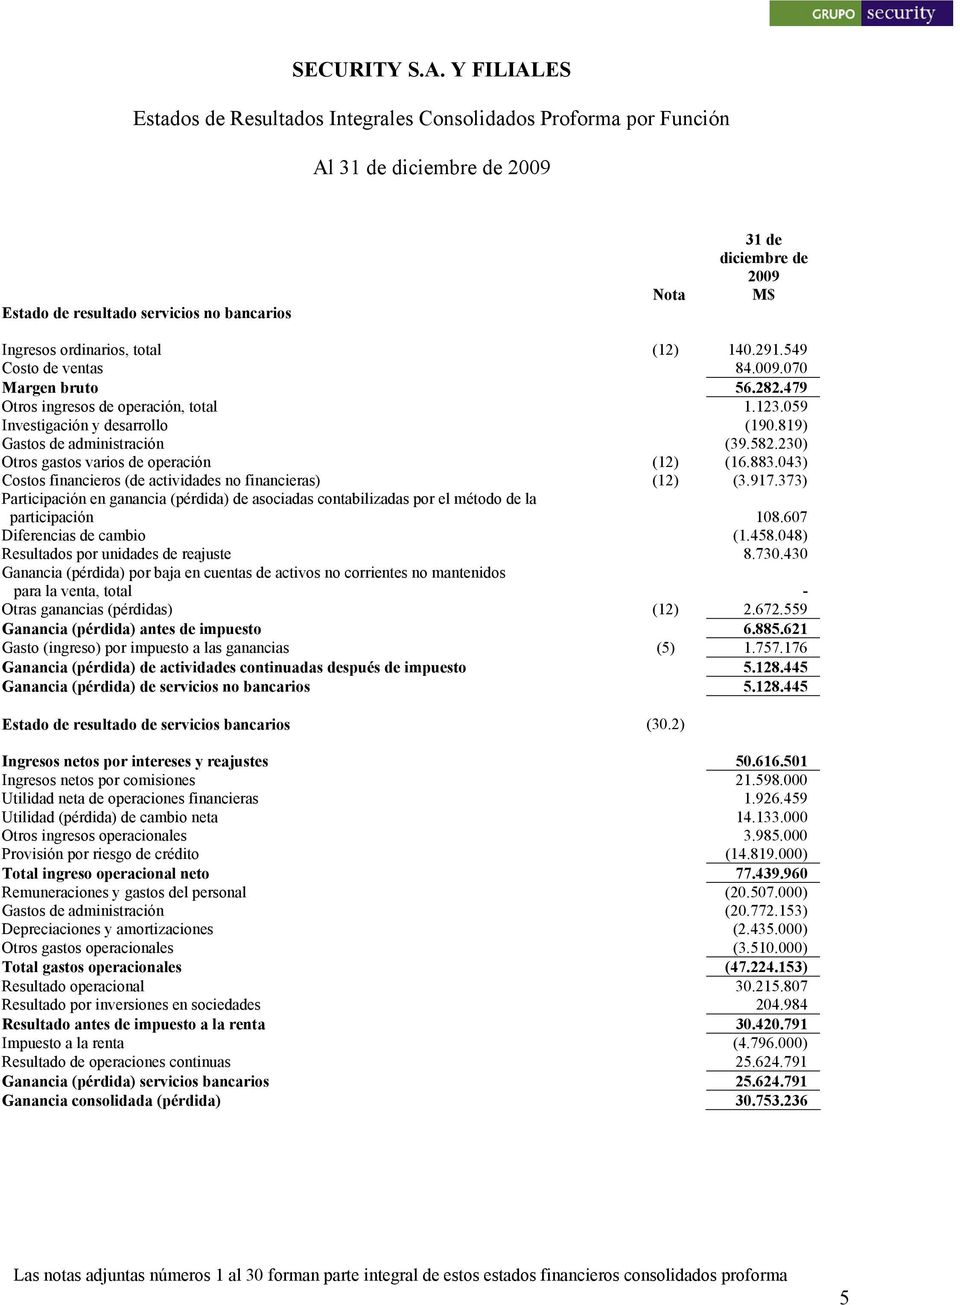 230) Otros gastos varios de operación (12) (16.883.043) Costos financieros (de actividades no financieras) (12) (3.917.